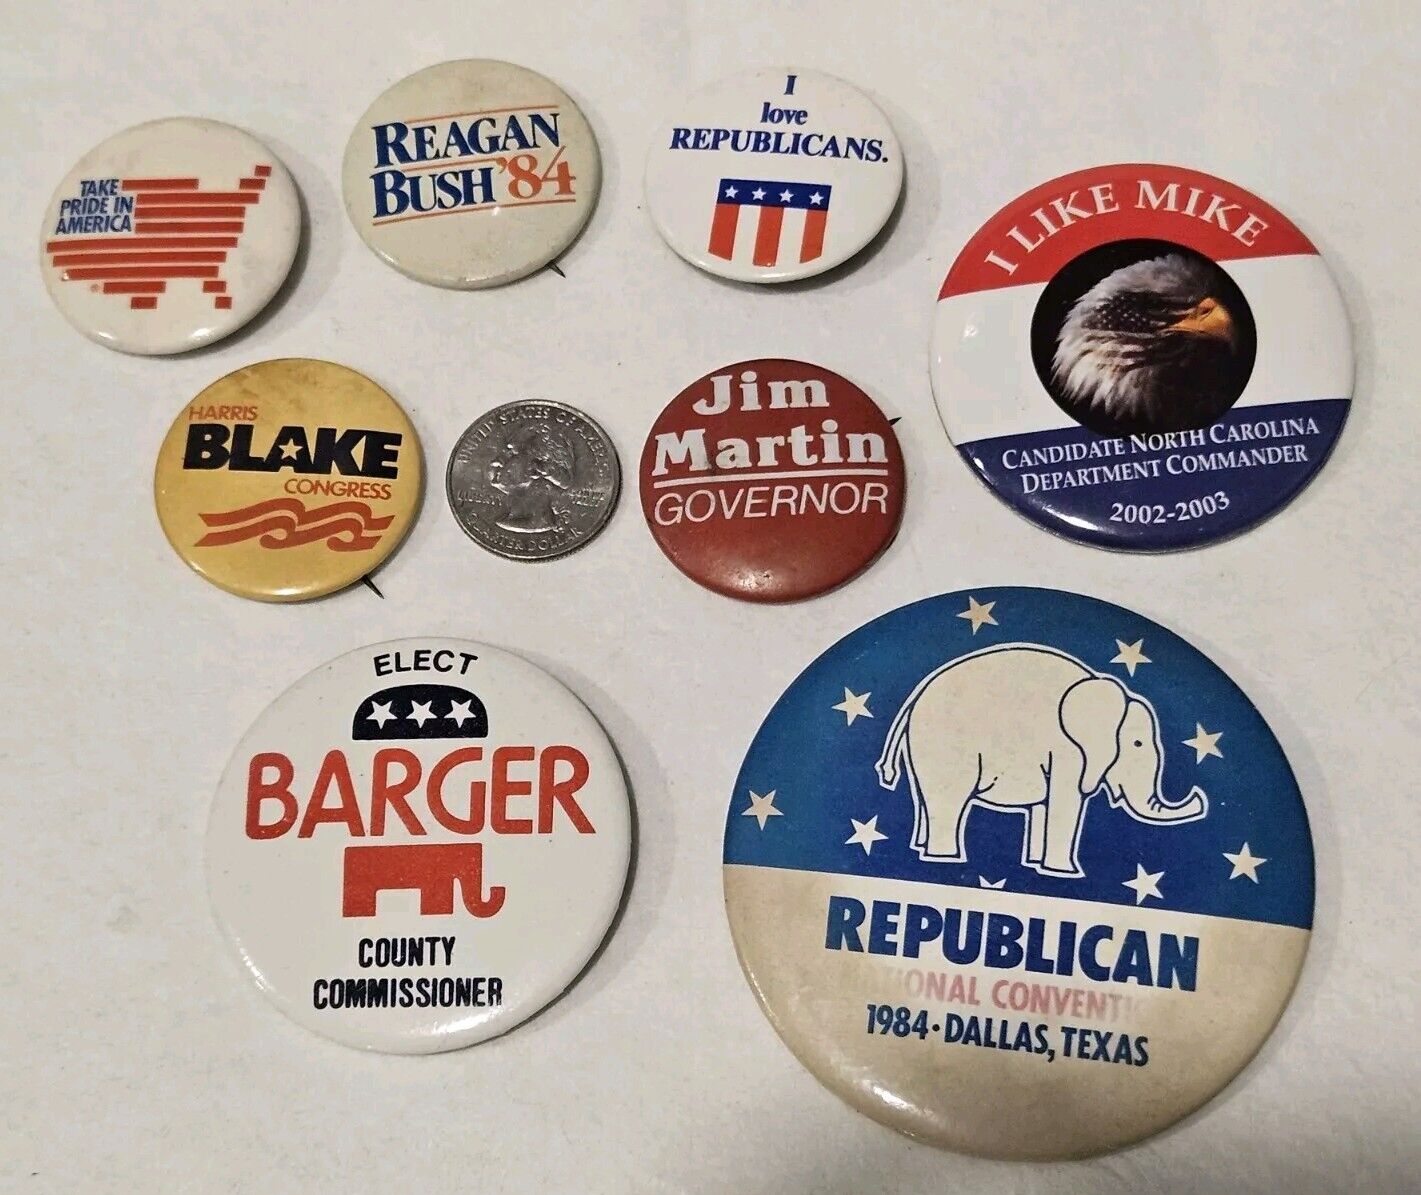 8 Vintage Republican Pins- RNC 1984, Reagan Bush 84 And More